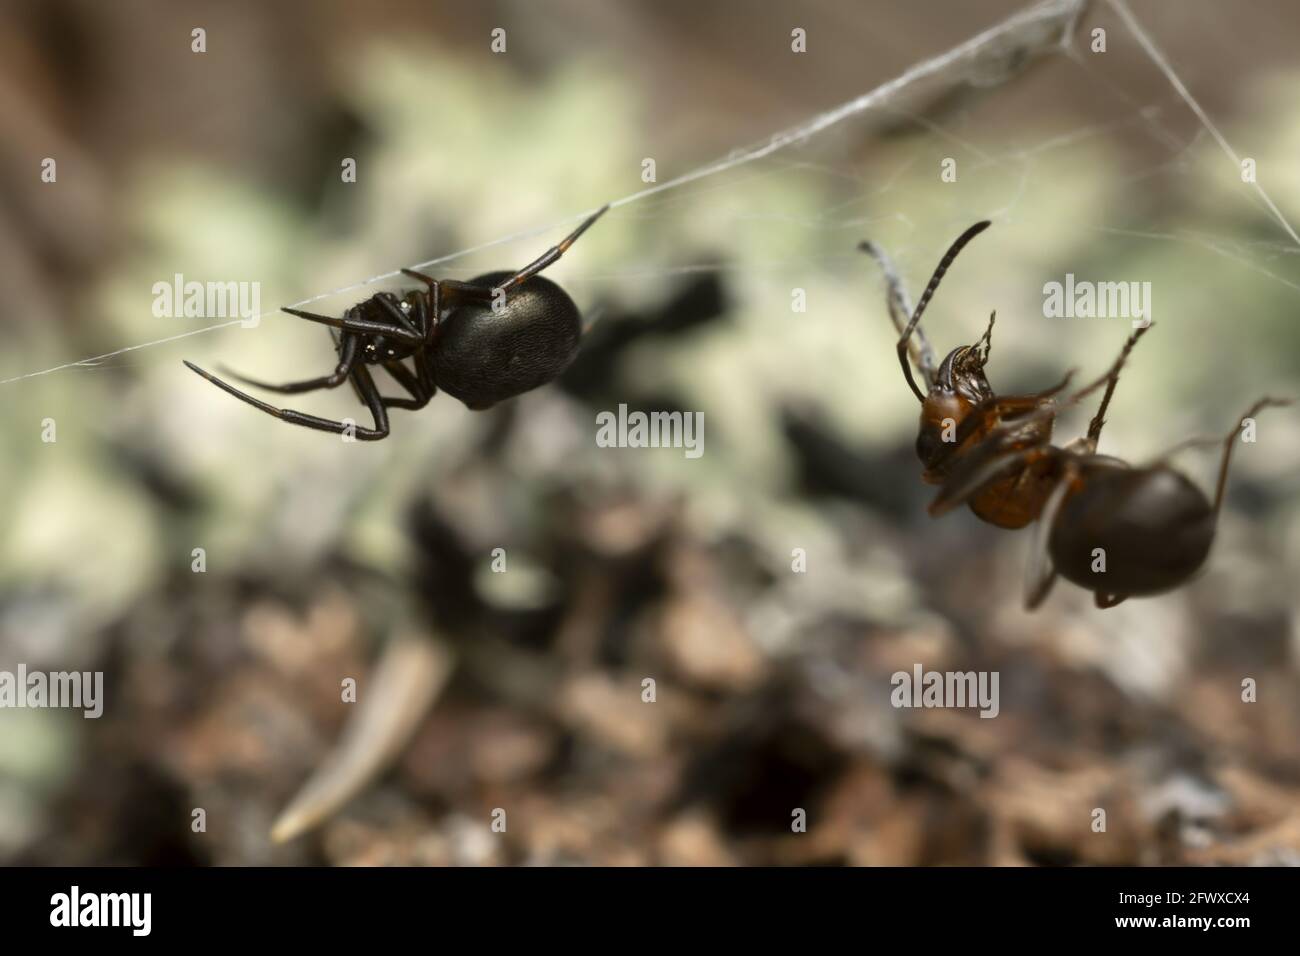 Primer plano de una araña enredada, Theridiidae con hormiga de madera capturada Foto de stock